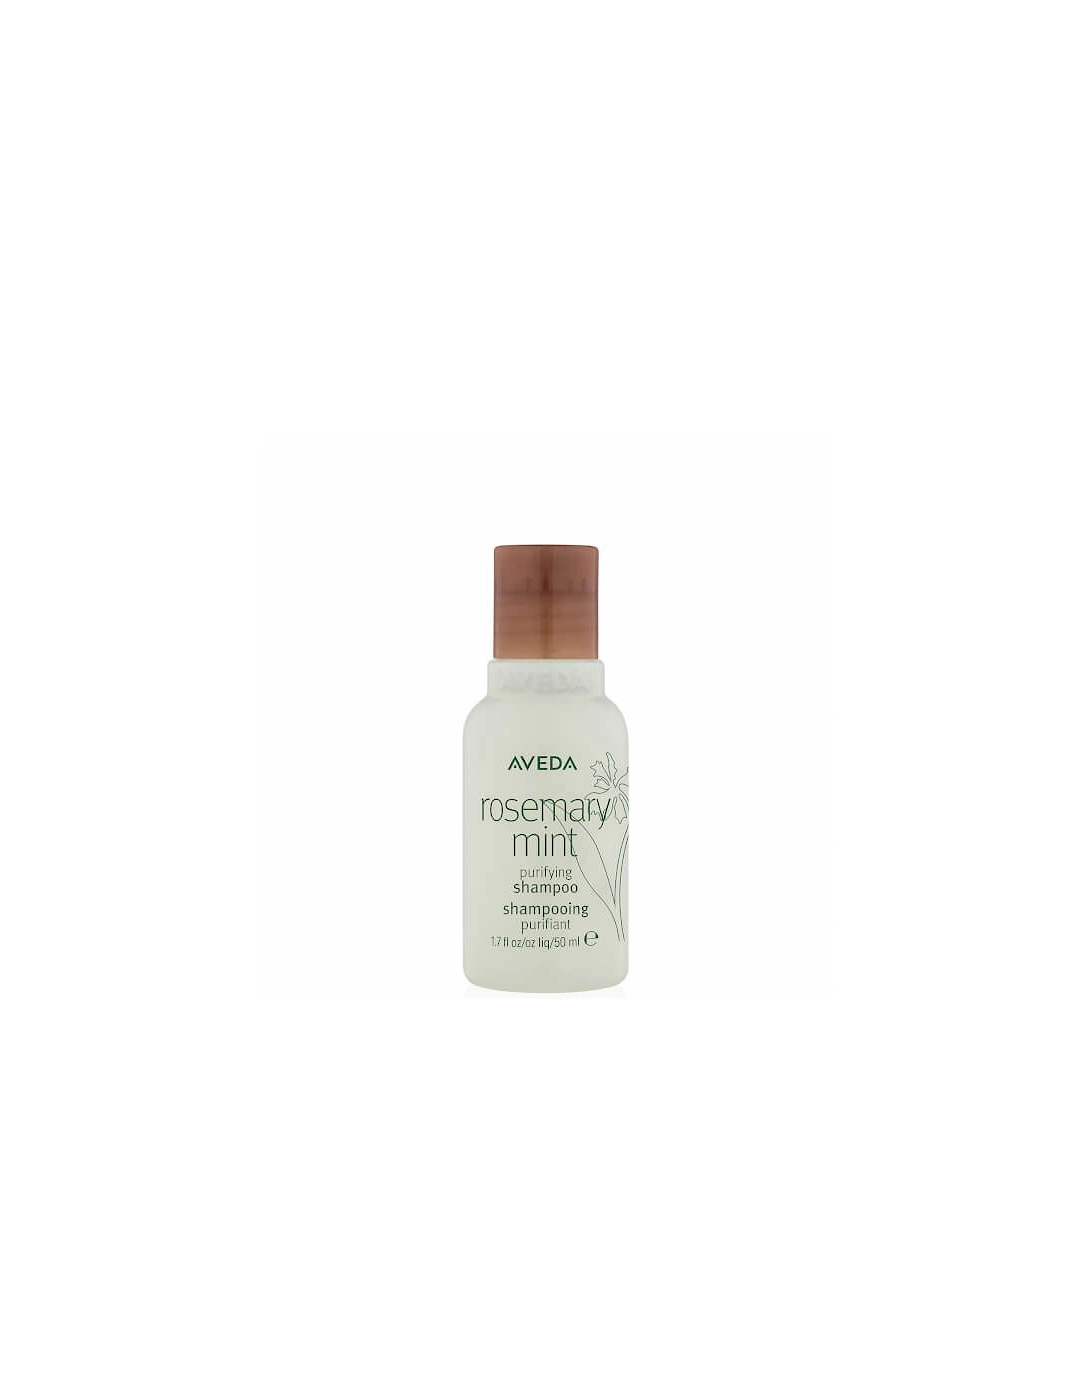 Rosemary Mint Purifying Shampoo 50ml - Aveda, 2 of 1